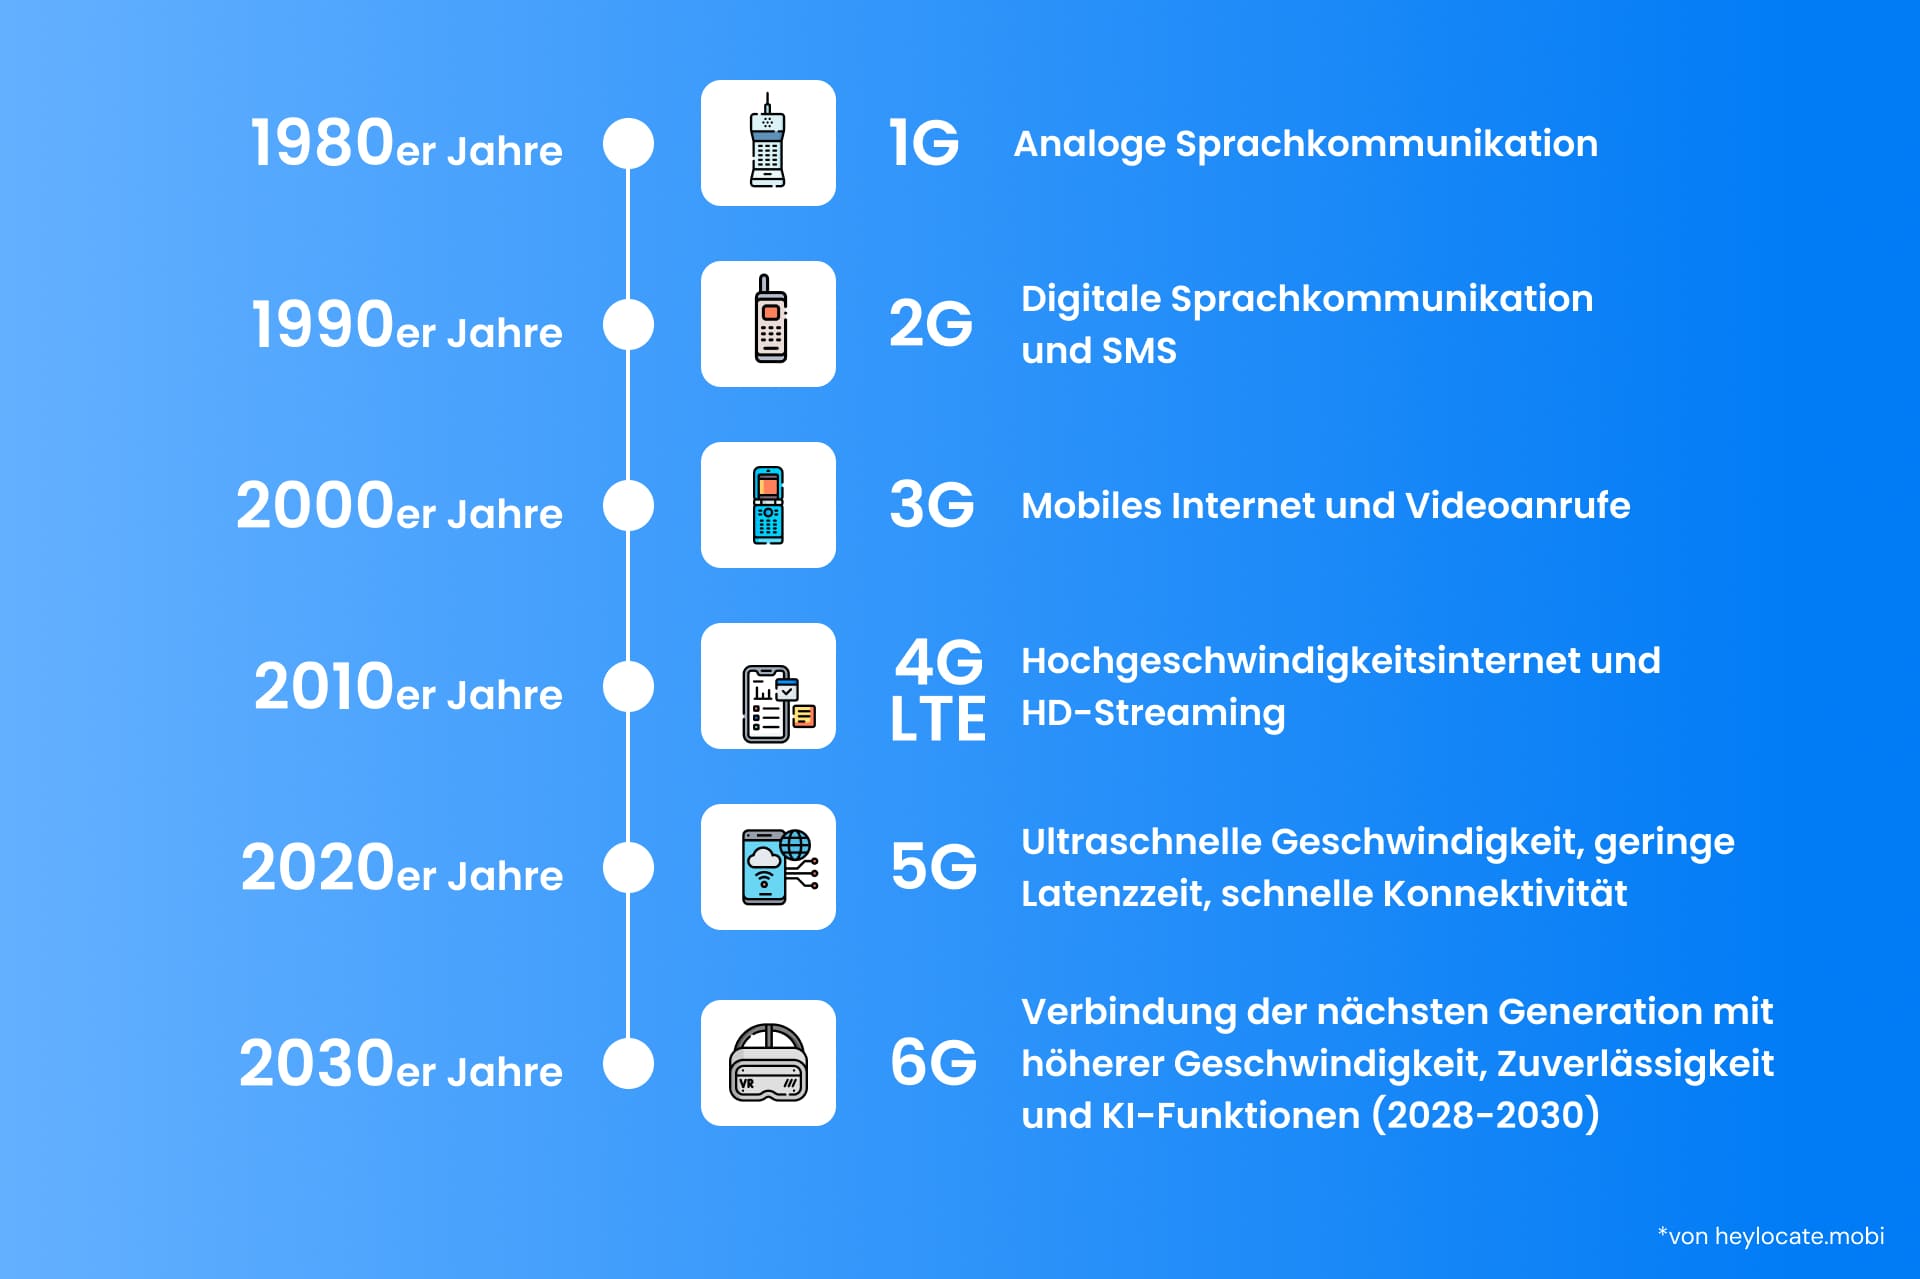 Zeitleistengrafik, die die Entwicklung der Mobilfunktechnologie von den 1980er Jahren bis in die 2030er Jahre zeigt, mit Illustrationen für 1G bis 6G, mit den Durchbrüchen jeder Generation in Bezug auf Konnektivität und Geschwindigkeit